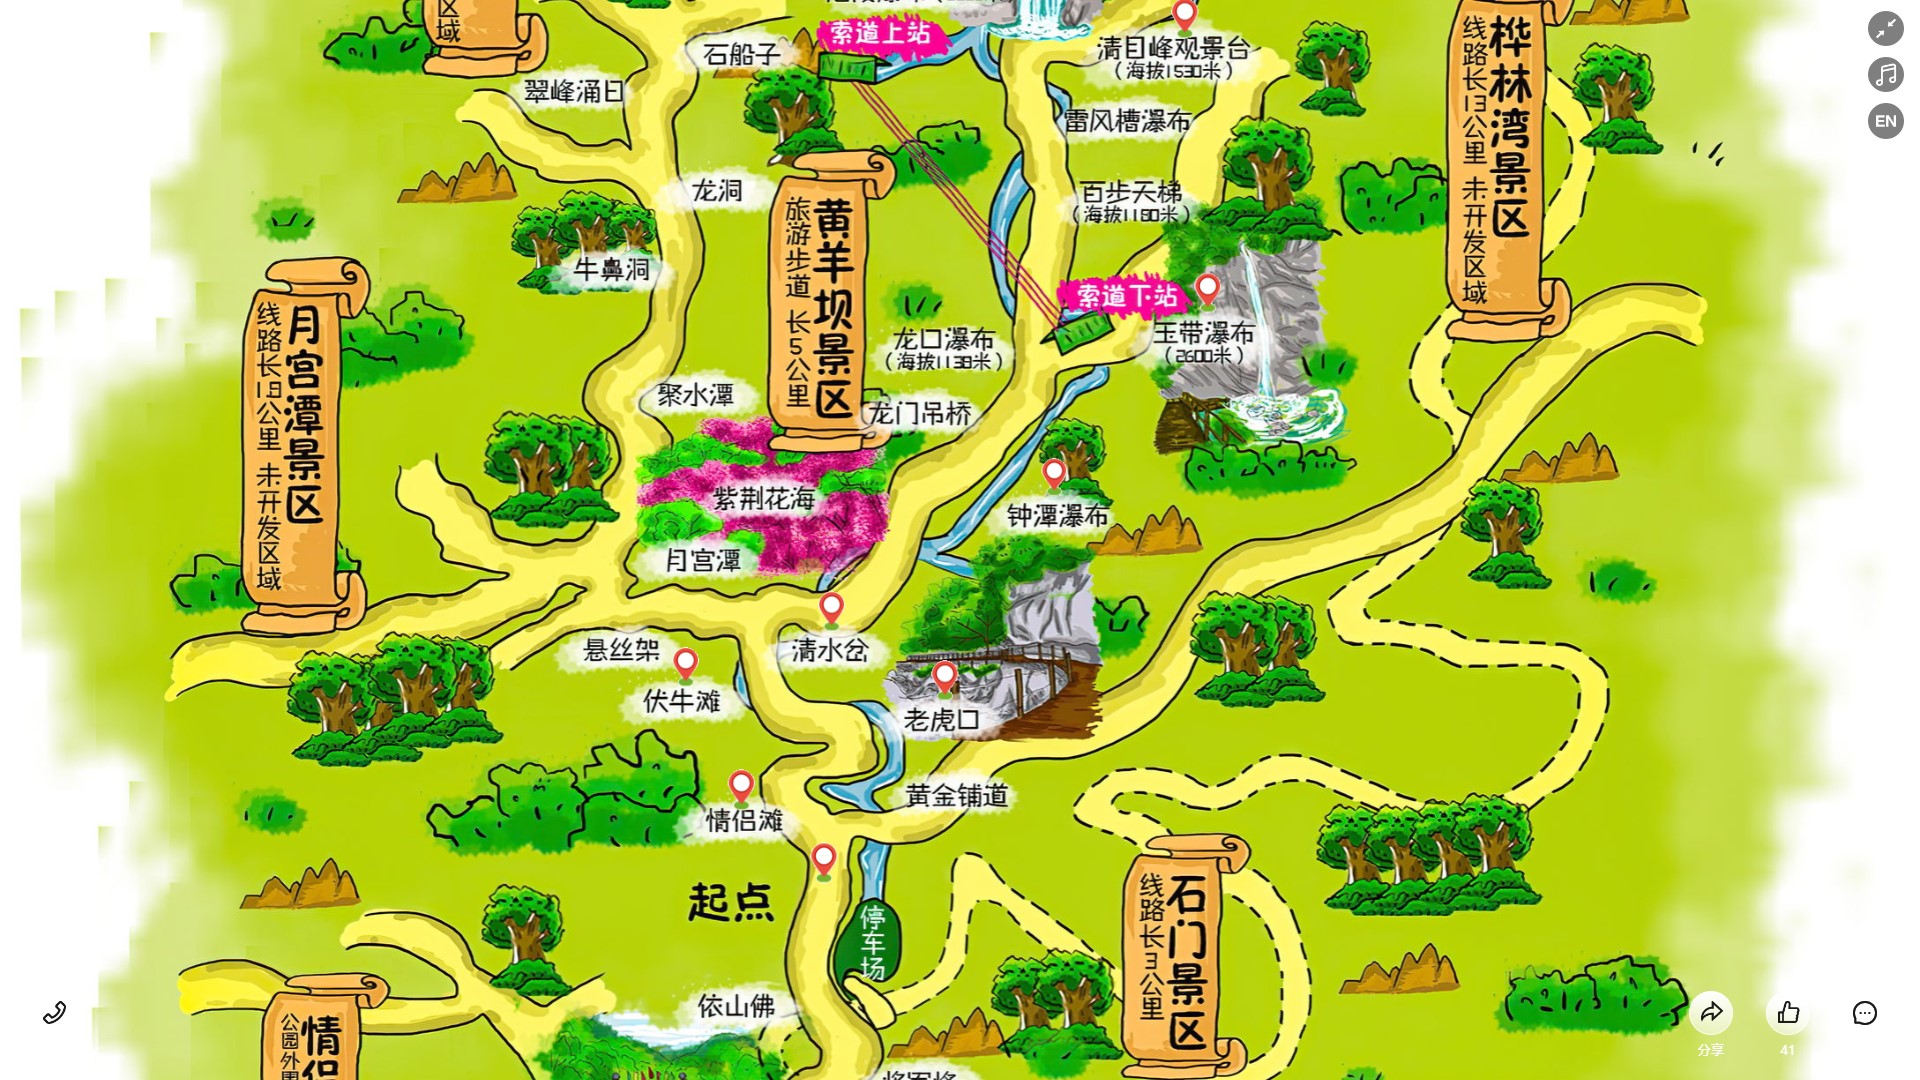 博鳌镇景区导览系统